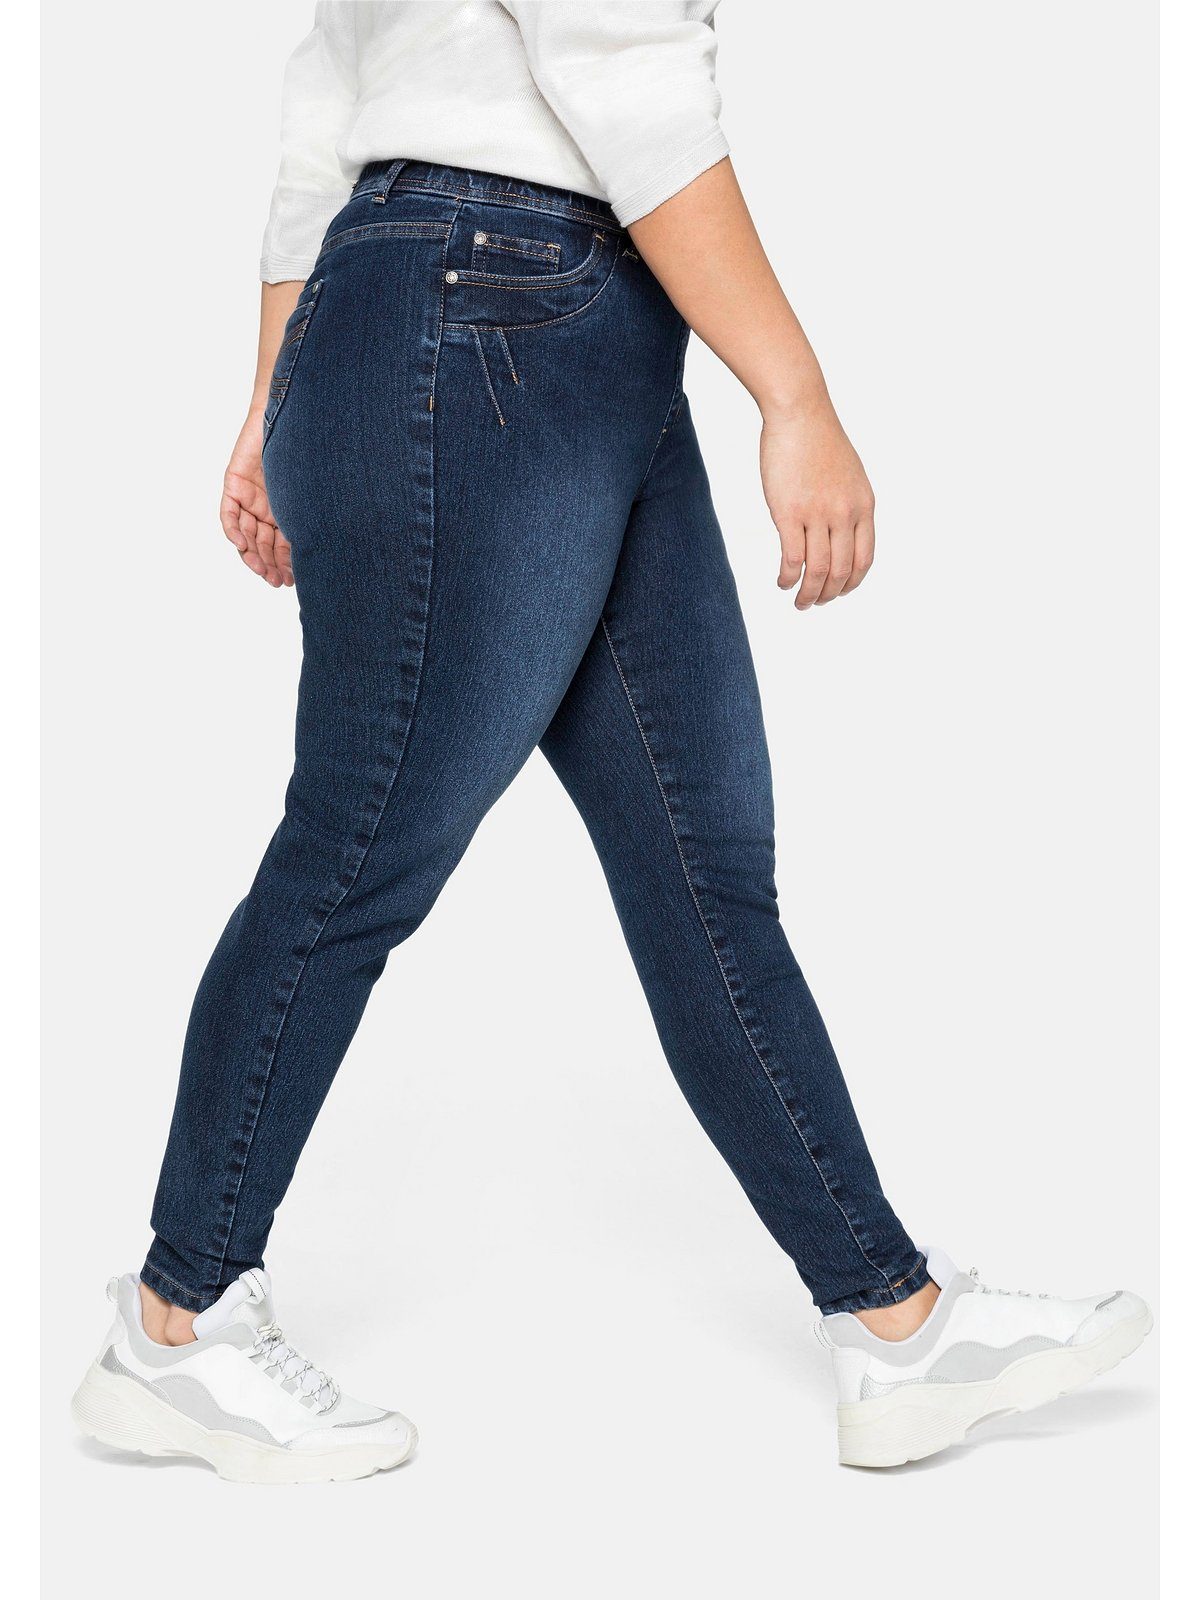 Stretch-Jeans Sheego Gürtelschlaufen mit Denim und Gummibund dark Große Größen blue